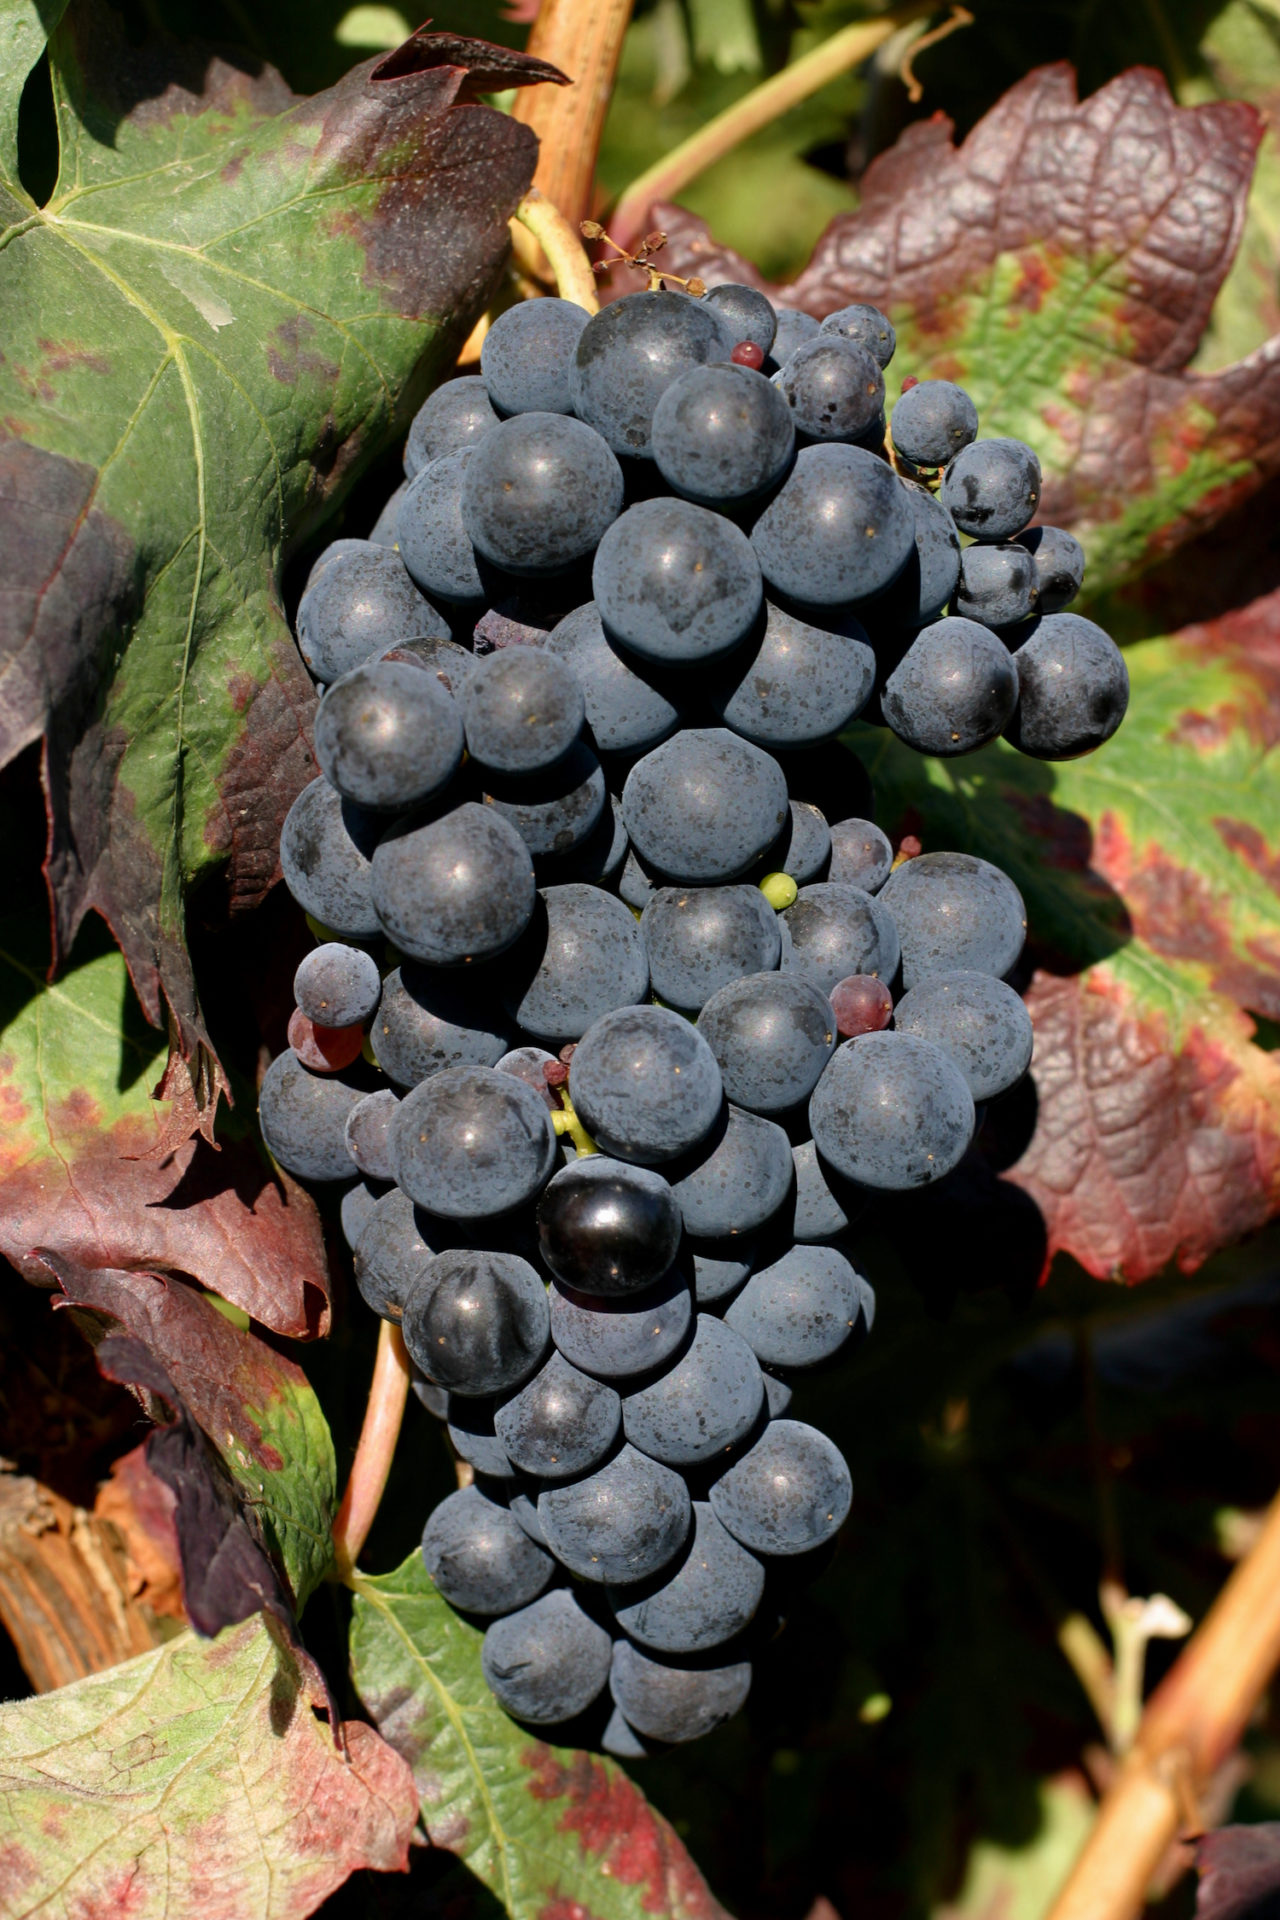 A ripe tempranillo grape on the vine